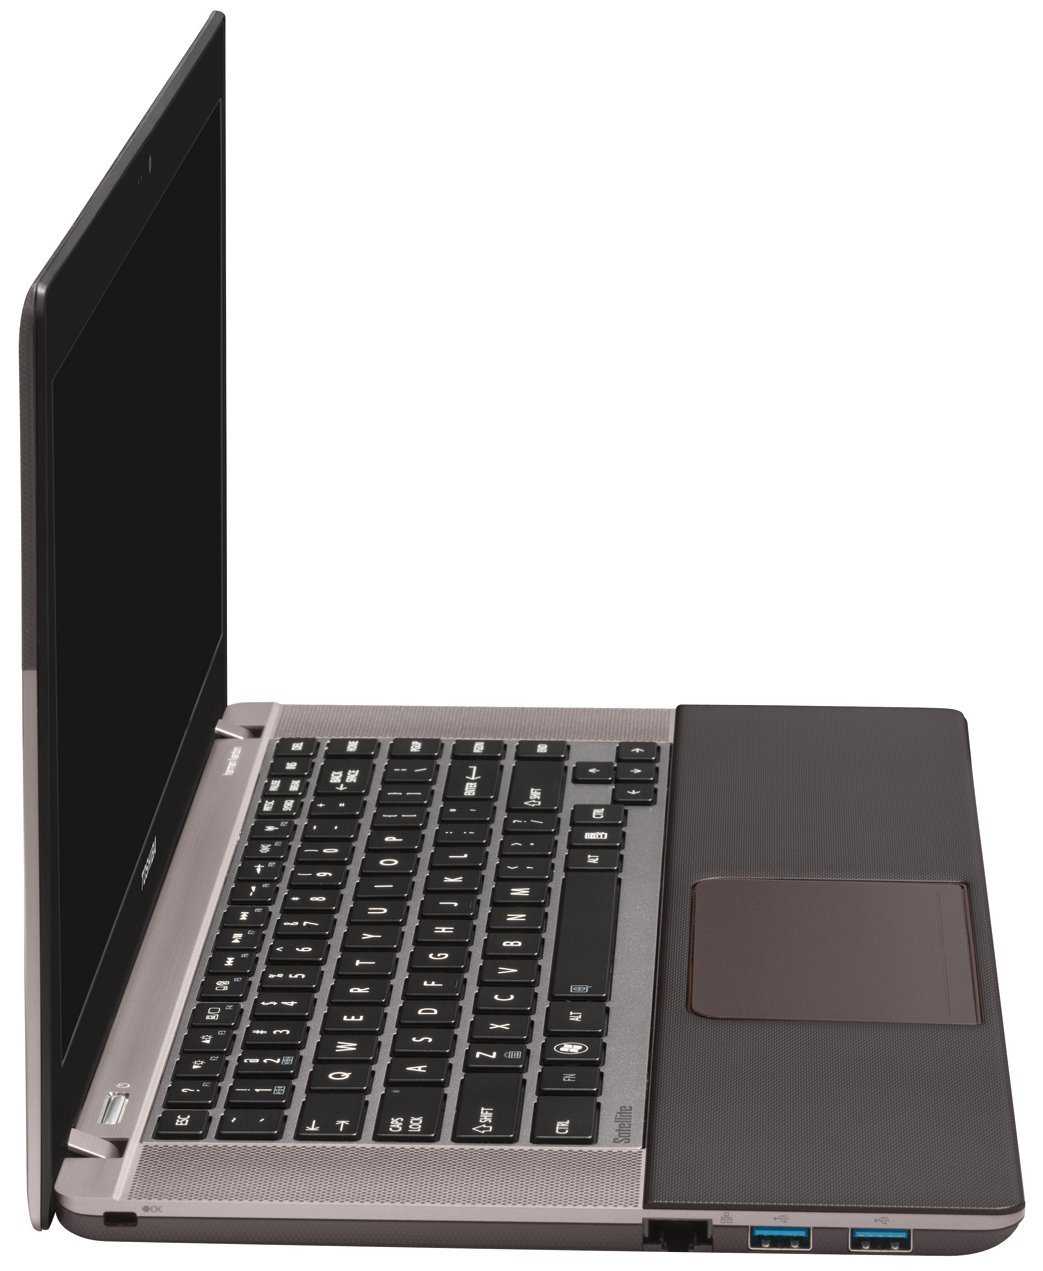 Купить ноутбук toshiba satellite u840w-d8s в минске с доставкой из интернет-магазина